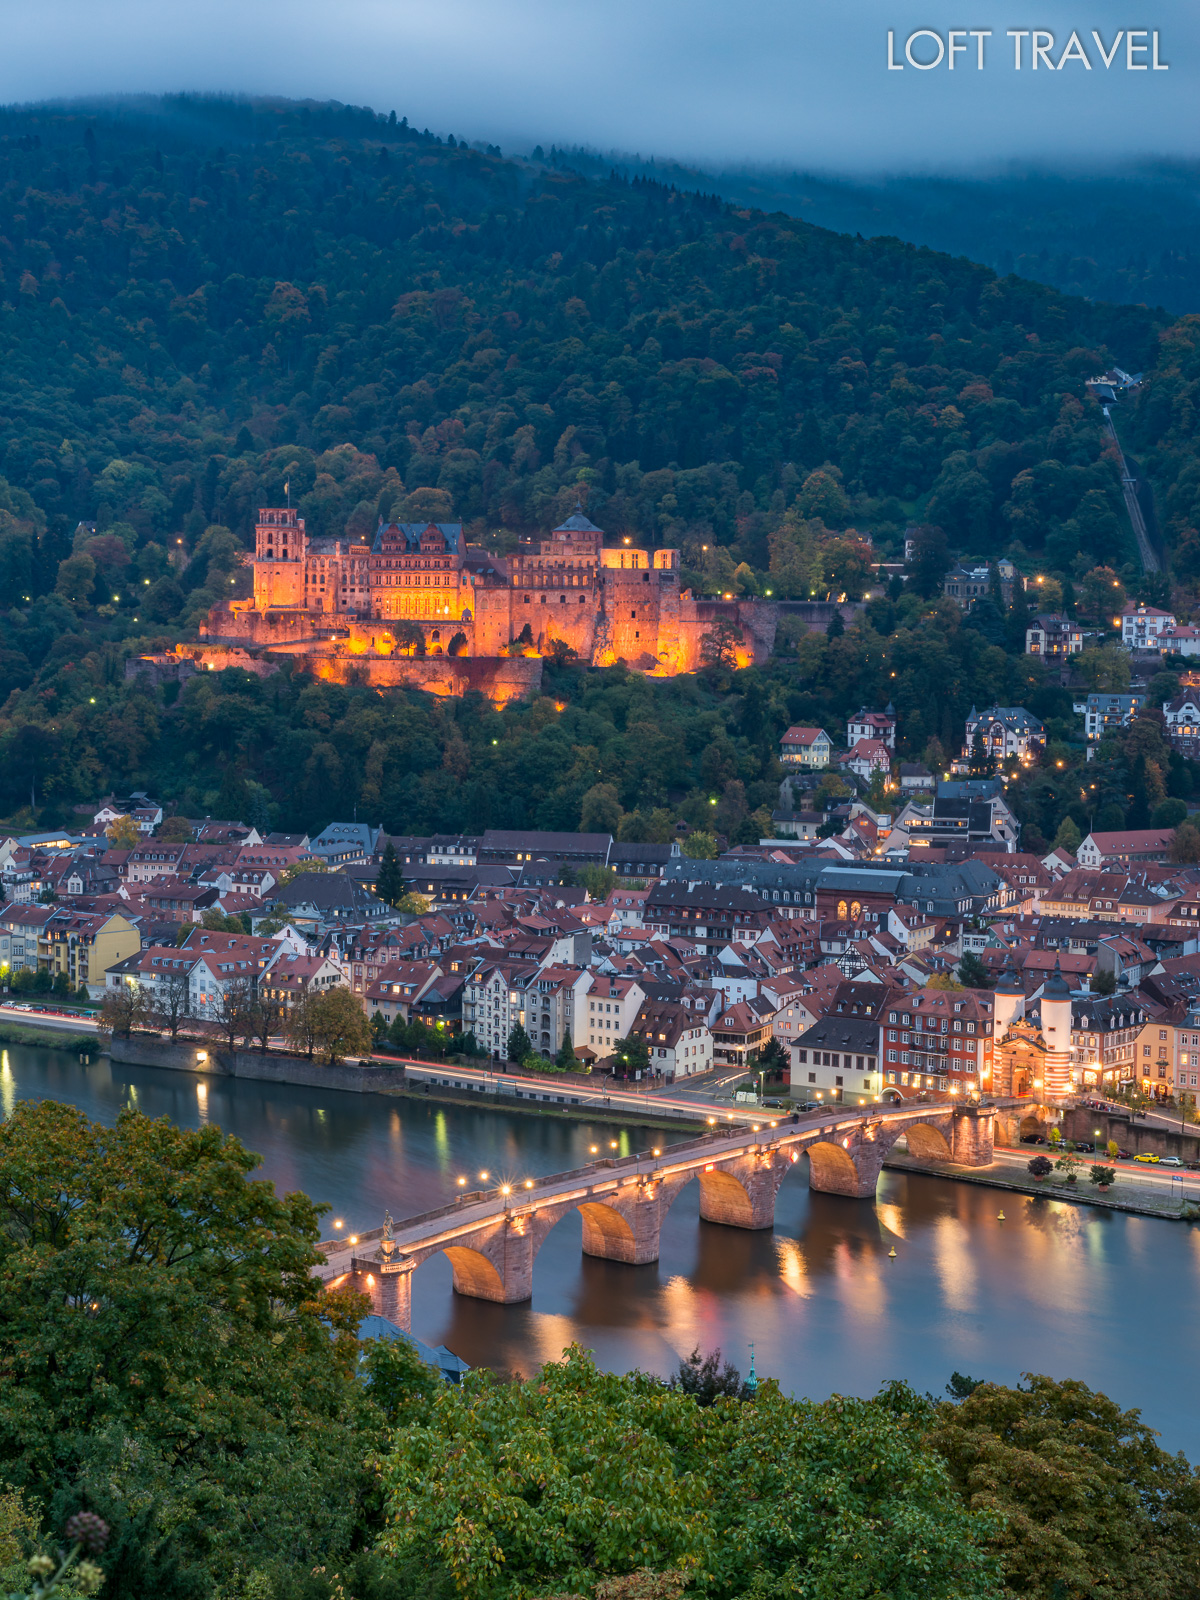 ปราสาทไฮเดลเบิร์ก (Heidelberg Castle) ที่สร้างขึ้นอยู่บนเชิงเขาเหนือแม่ น้ำเน็กคาร์ ซึ่งสามารถมองเห็นวิวทิวทัศน์ของเมืองได้โดยรอบ โดยตัวปราสาทสร้างด้วยหินทรายสีแดงซึ่งมีอายุกว่า 900 ปี ภายในมีถังเก็บไวน์ที่ใหญ่ที่สุดในโลก